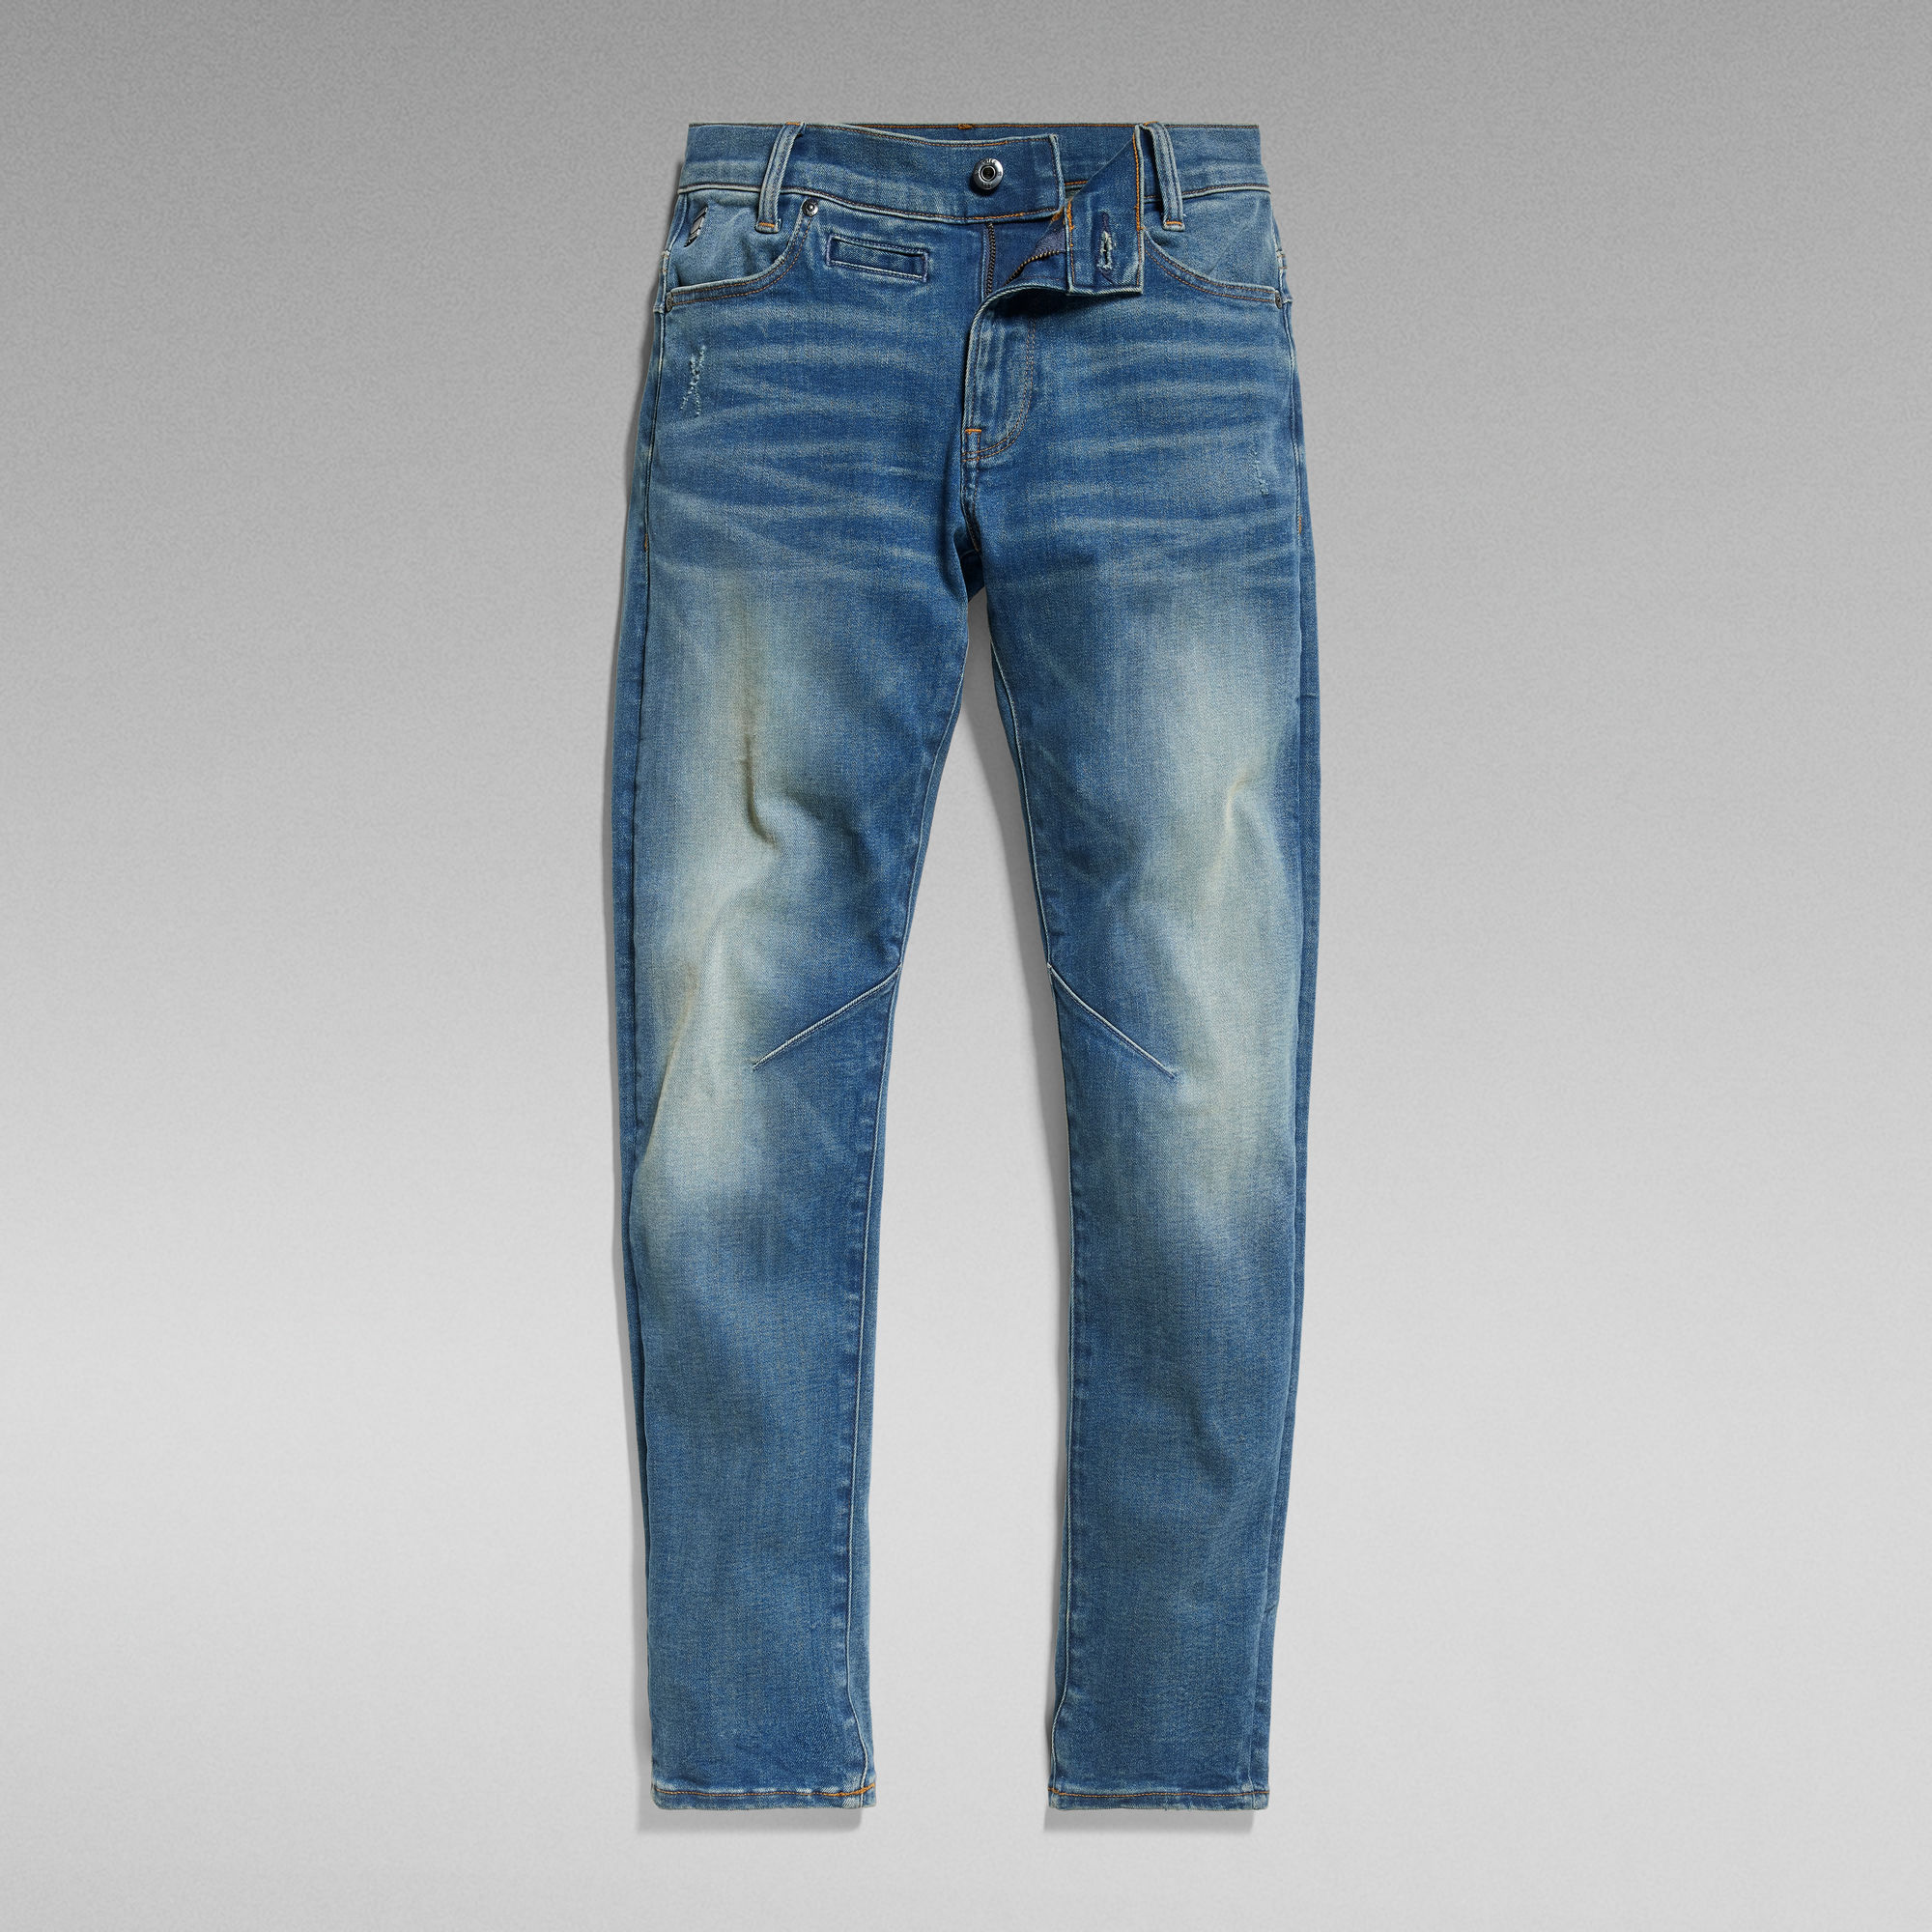 G-Star Raw D-STAQ regular fit jeans sun faded indigo Blauw Jongens Stretchdenim 140